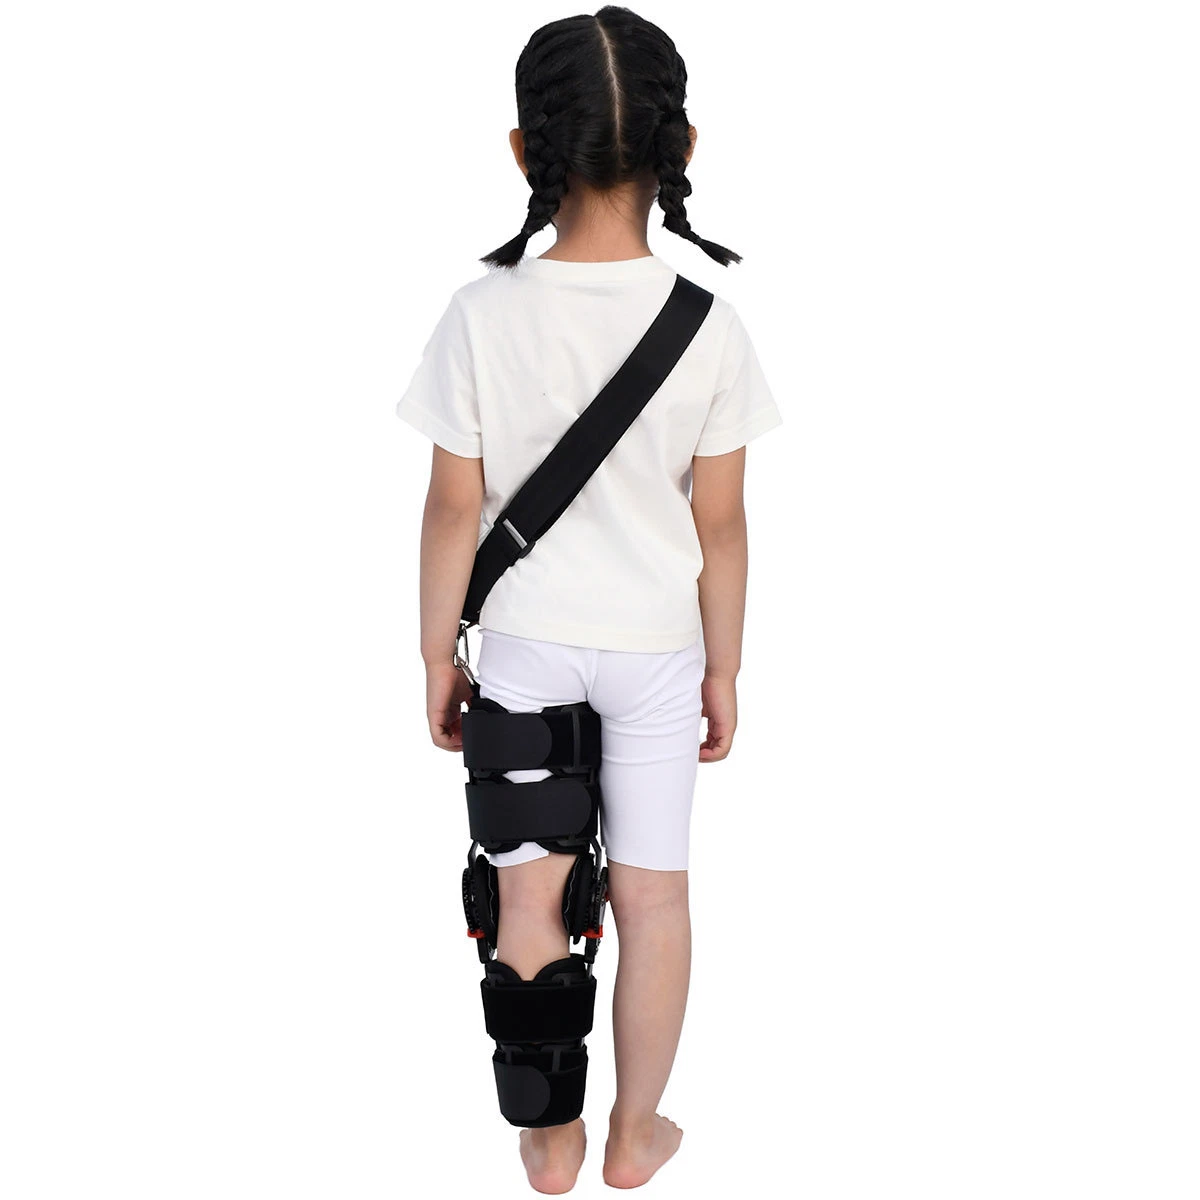 Supply Adjustable Compression Sleeve Orthopedic Brace Hinged Knee Support for Post Op Knee Brace Adjustable Knee Orthosis